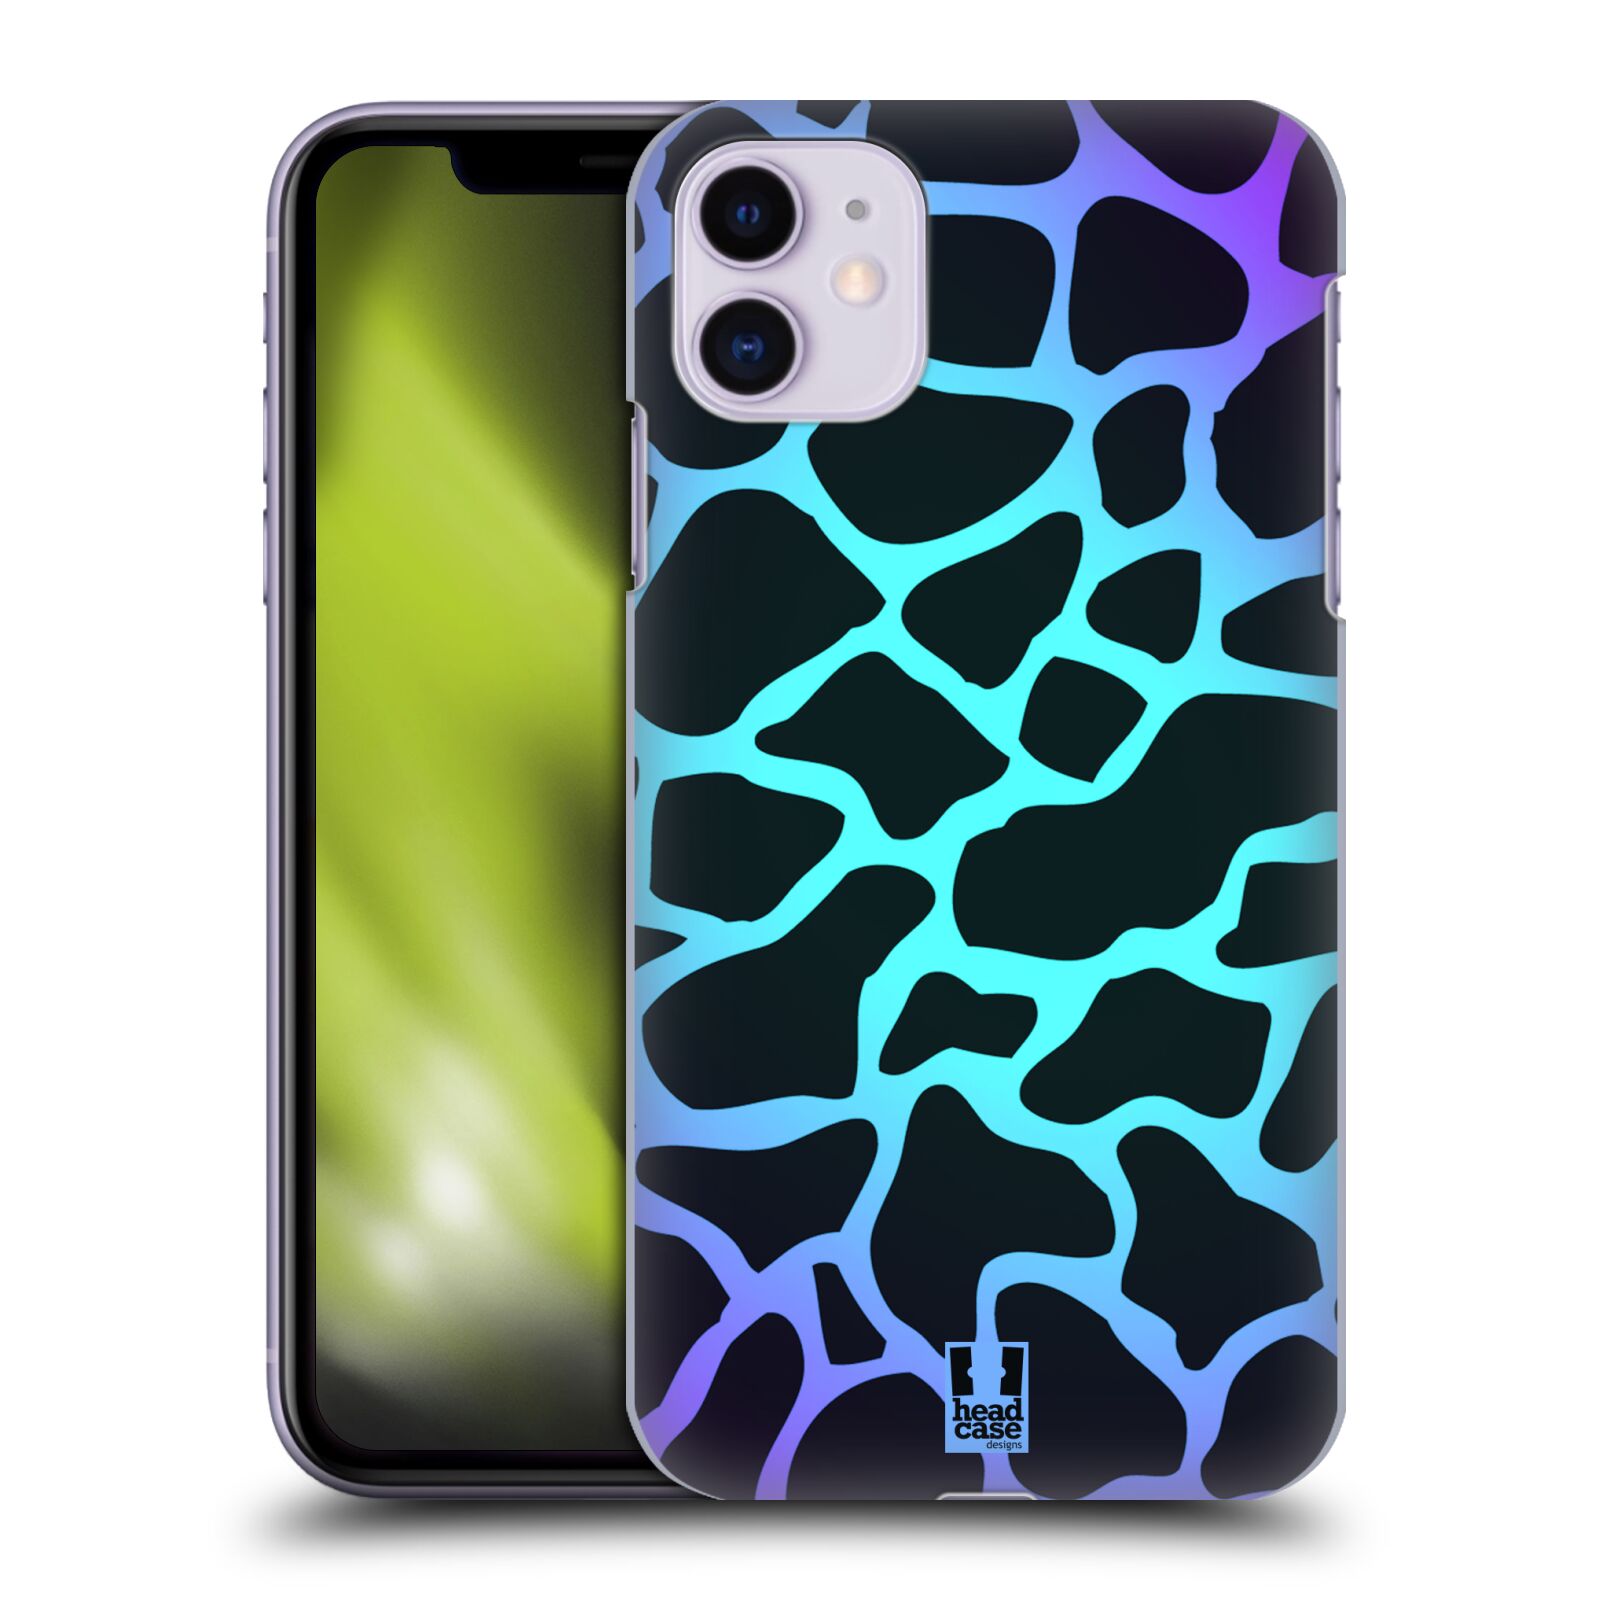 Pouzdro na mobil Apple Iphone 11 - HEAD CASE - vzor Divočina zvíře tyrkysová žirafa magický vzor